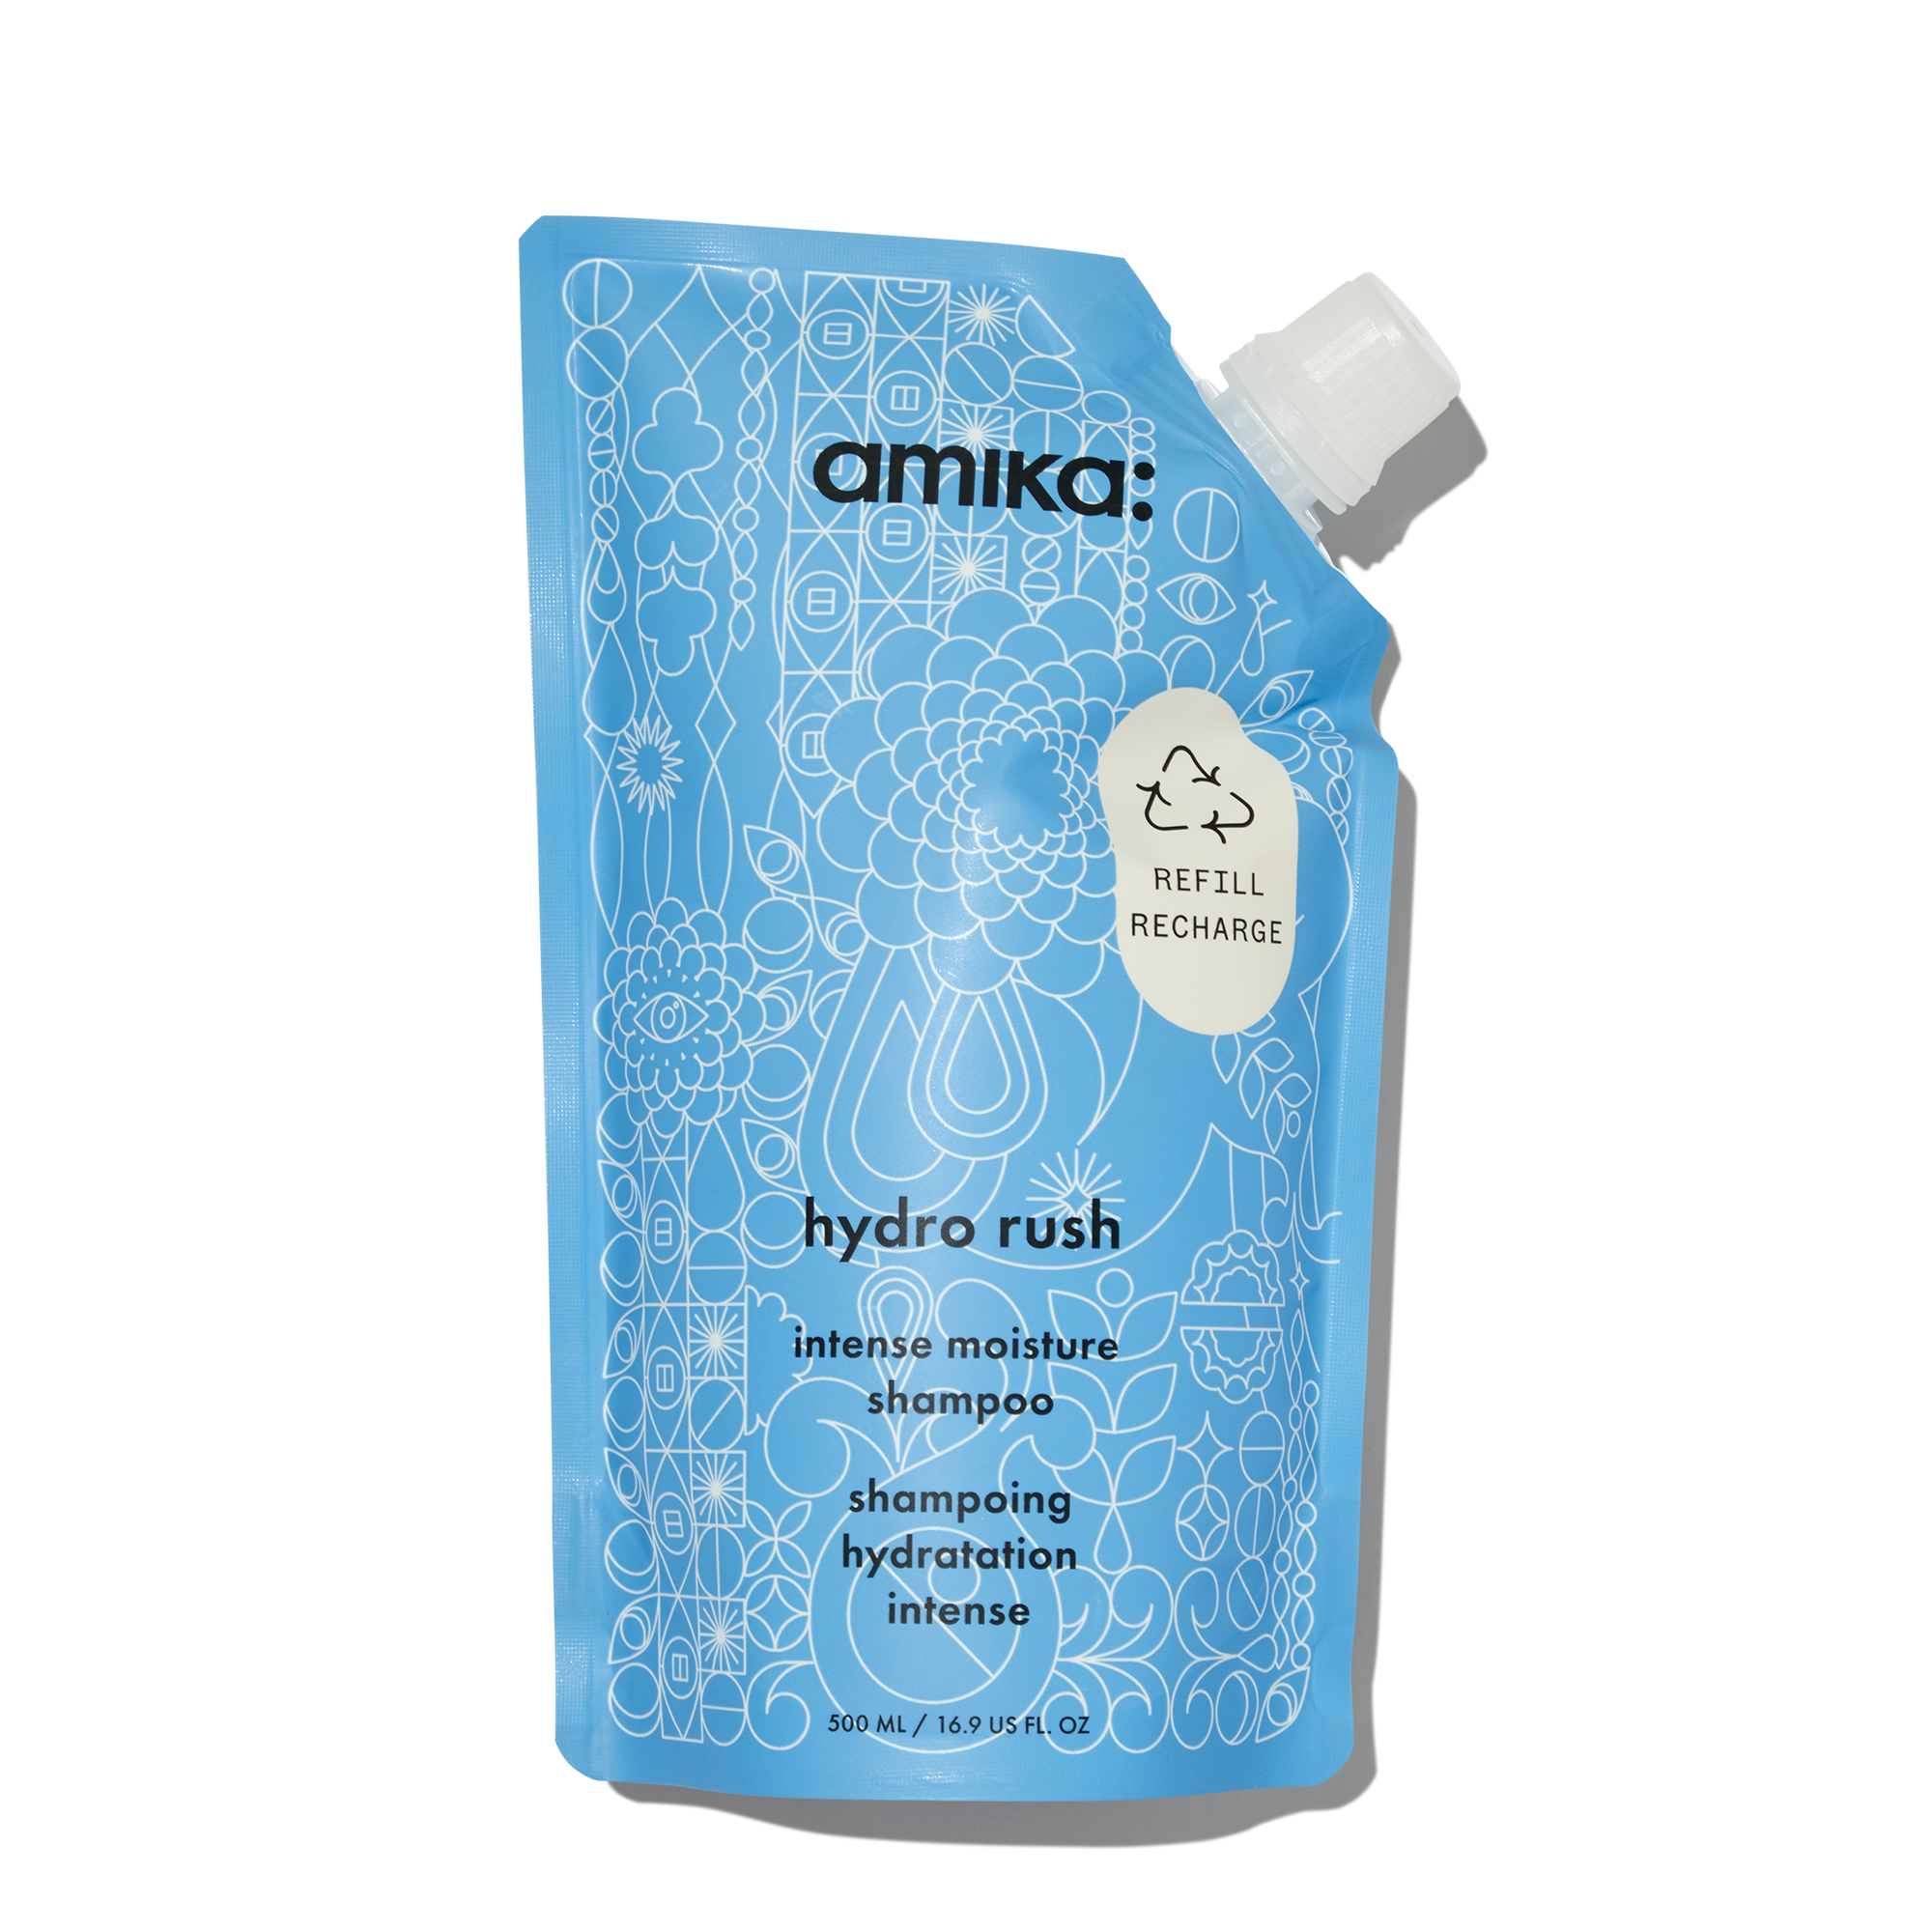 Amika Hydro Rush Intense Moisture Shampoo Refill / 16OZ